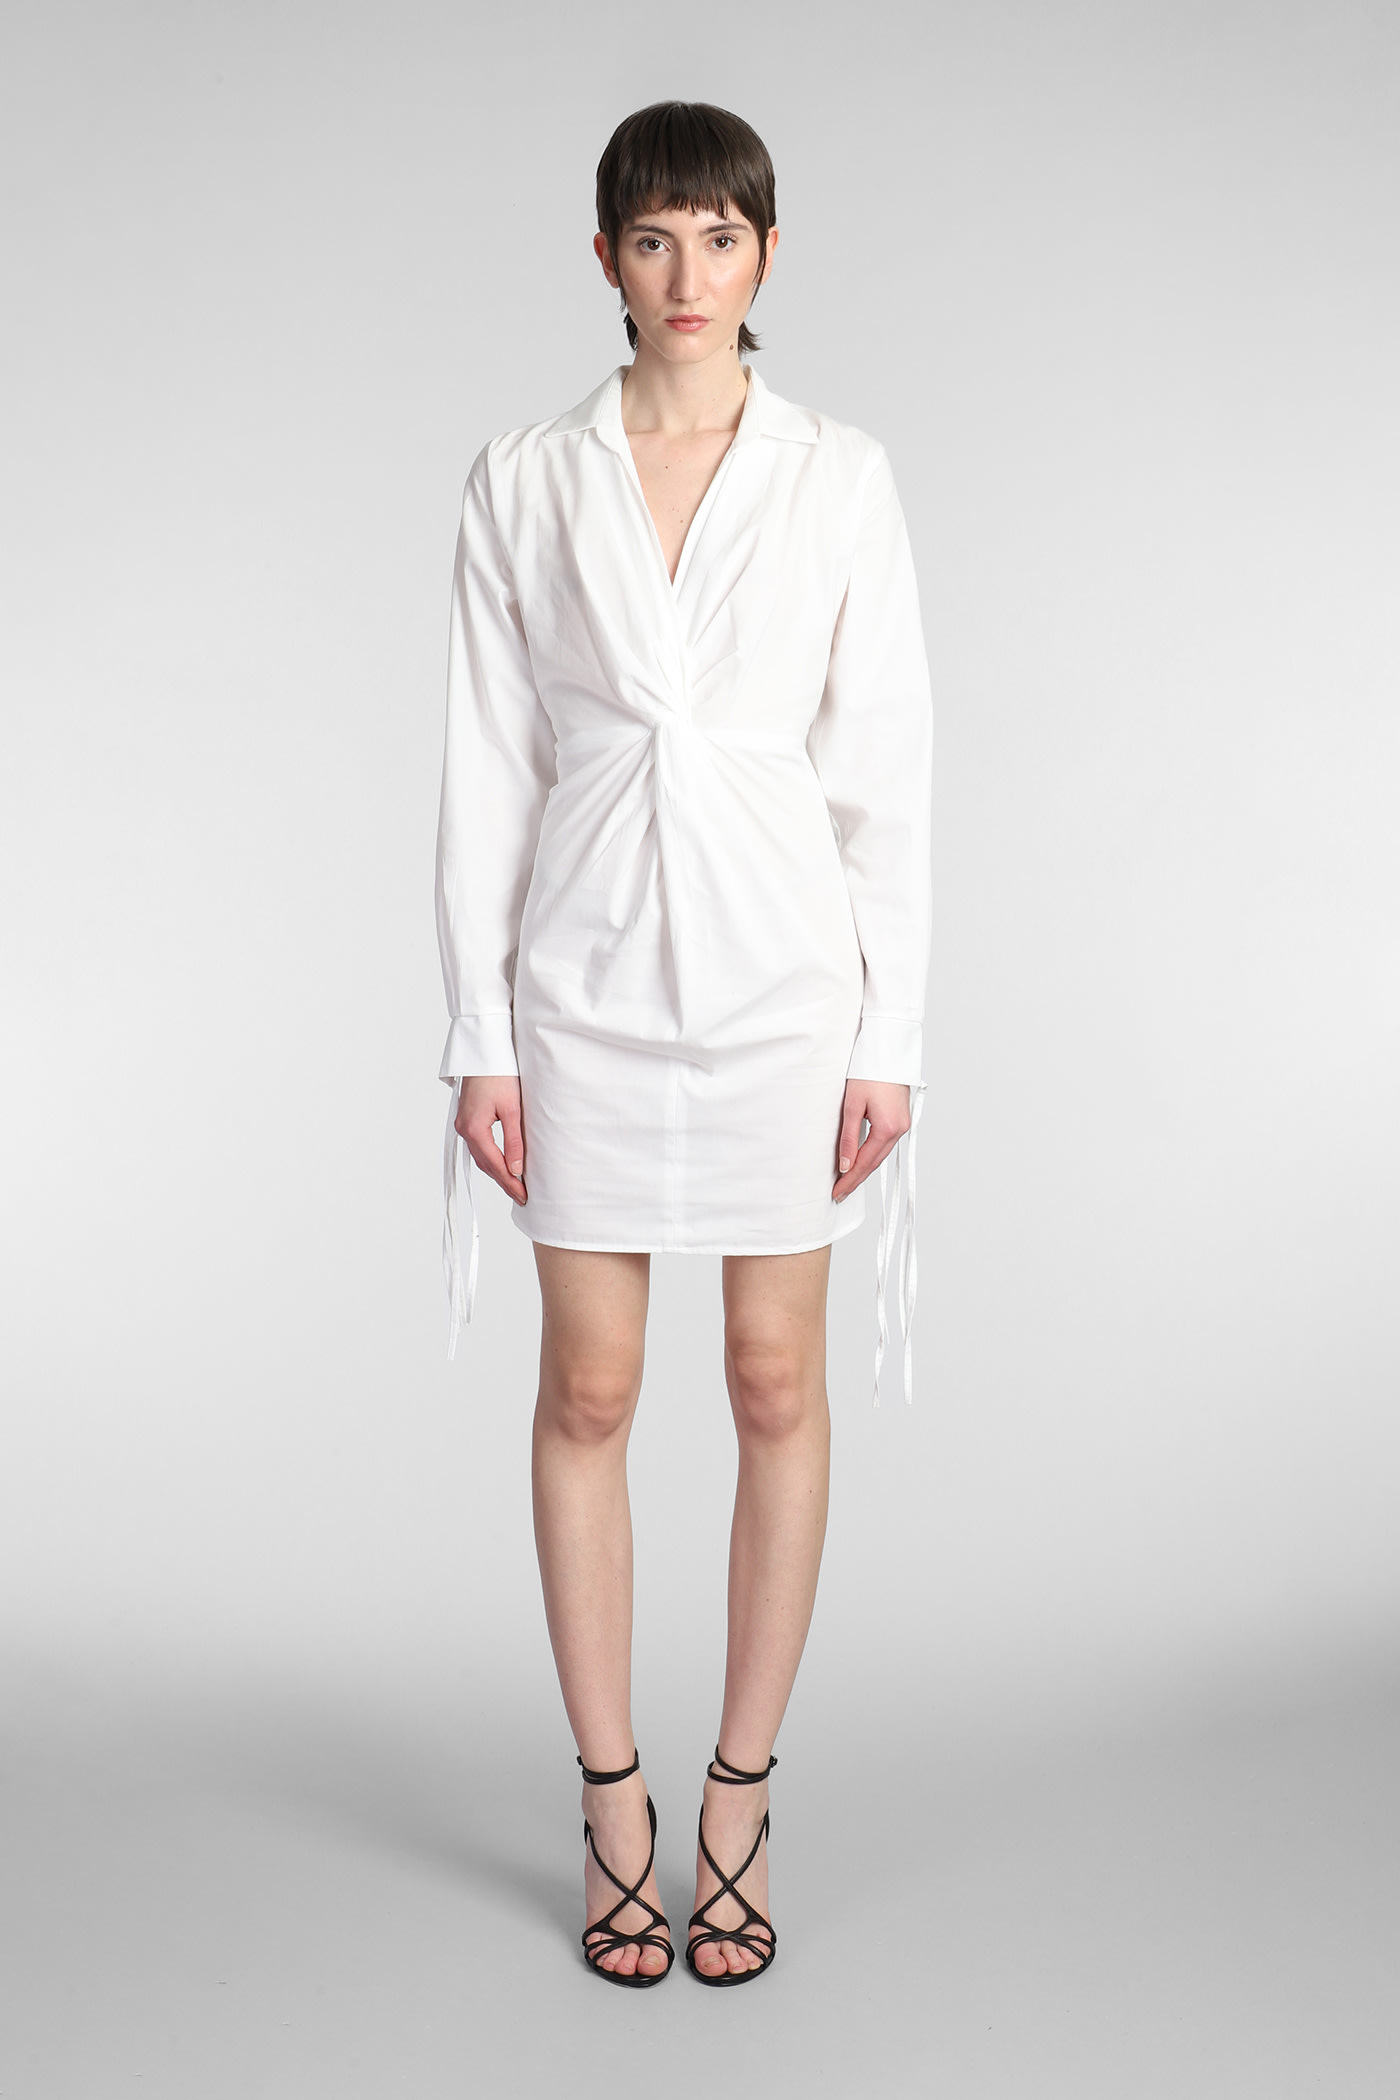 Andreädamo Dress In White Cotton